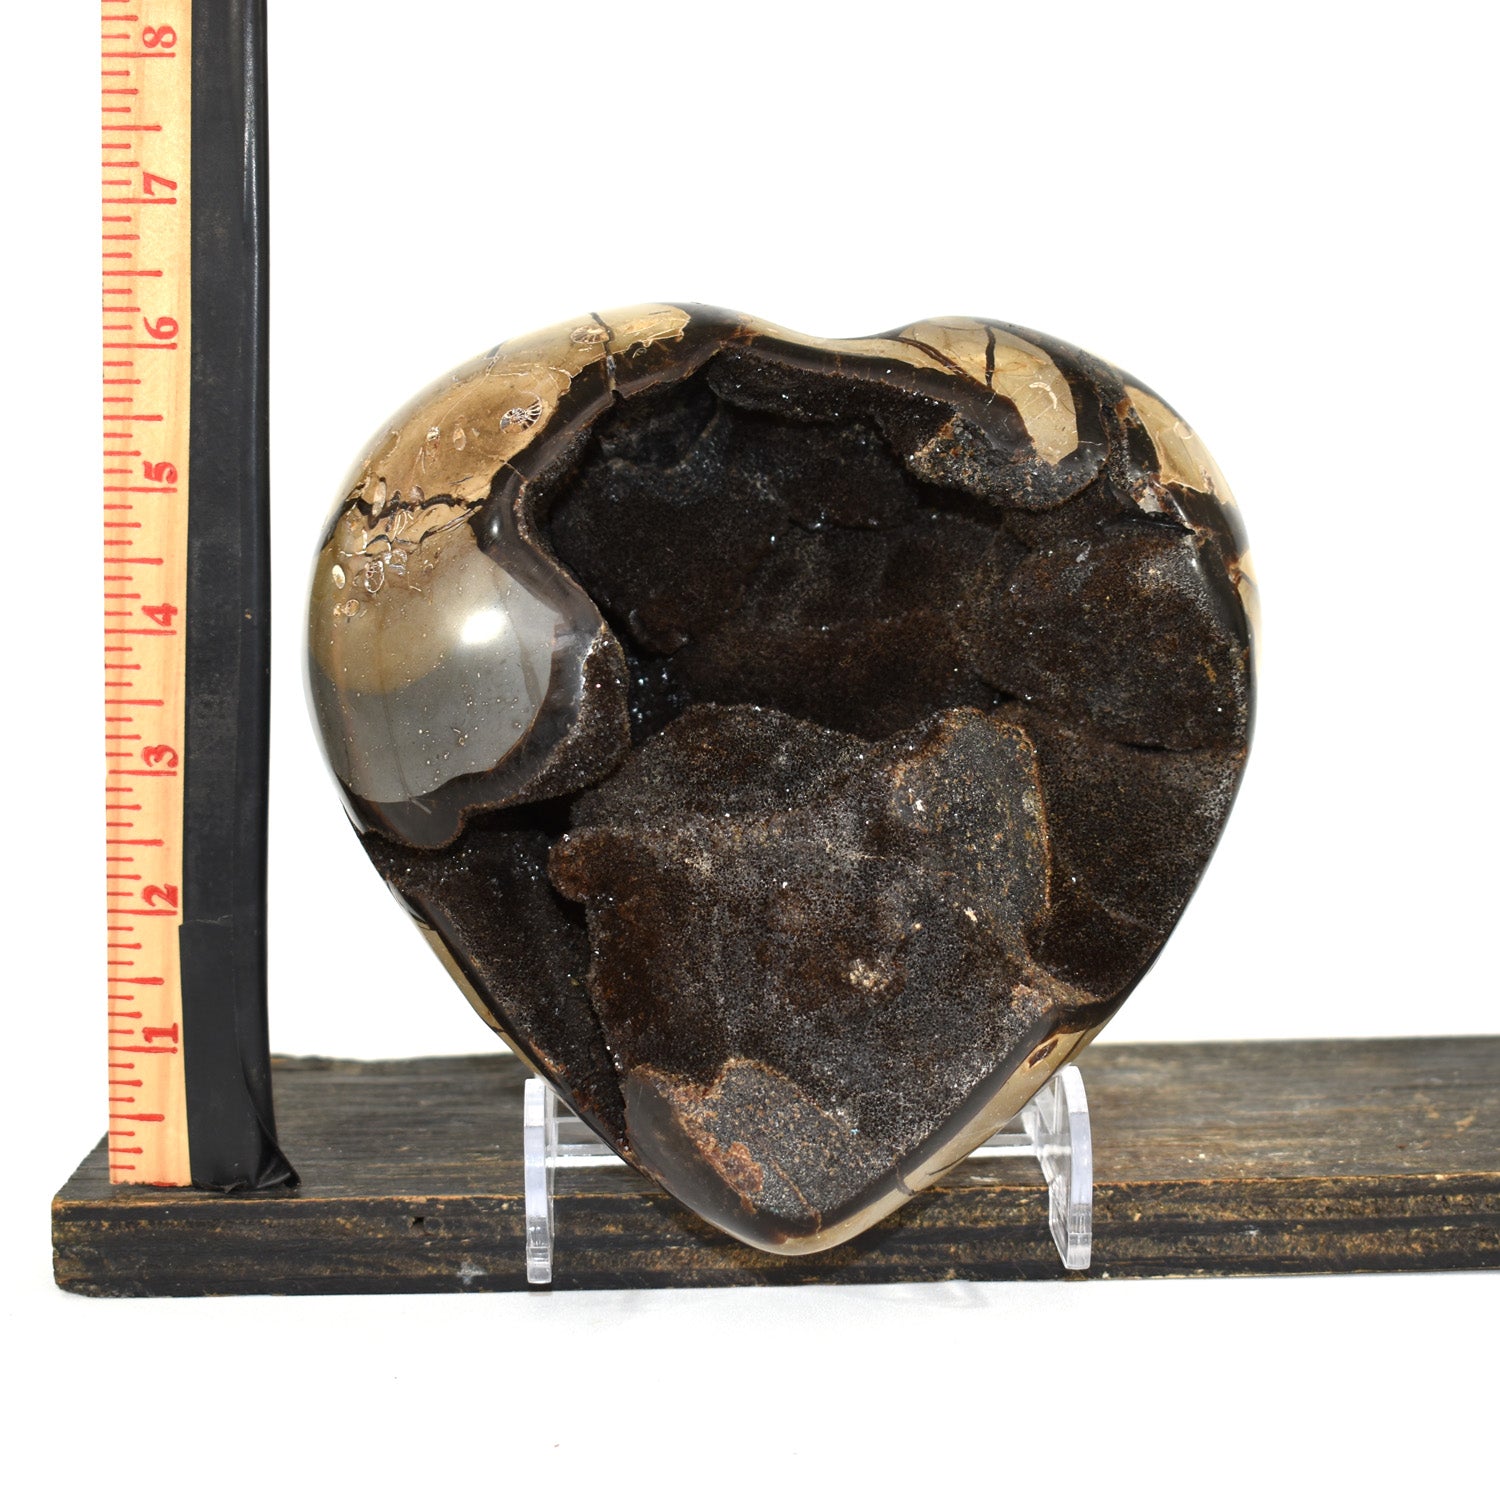 Septarian Geode Heart (7.8 Lbs)